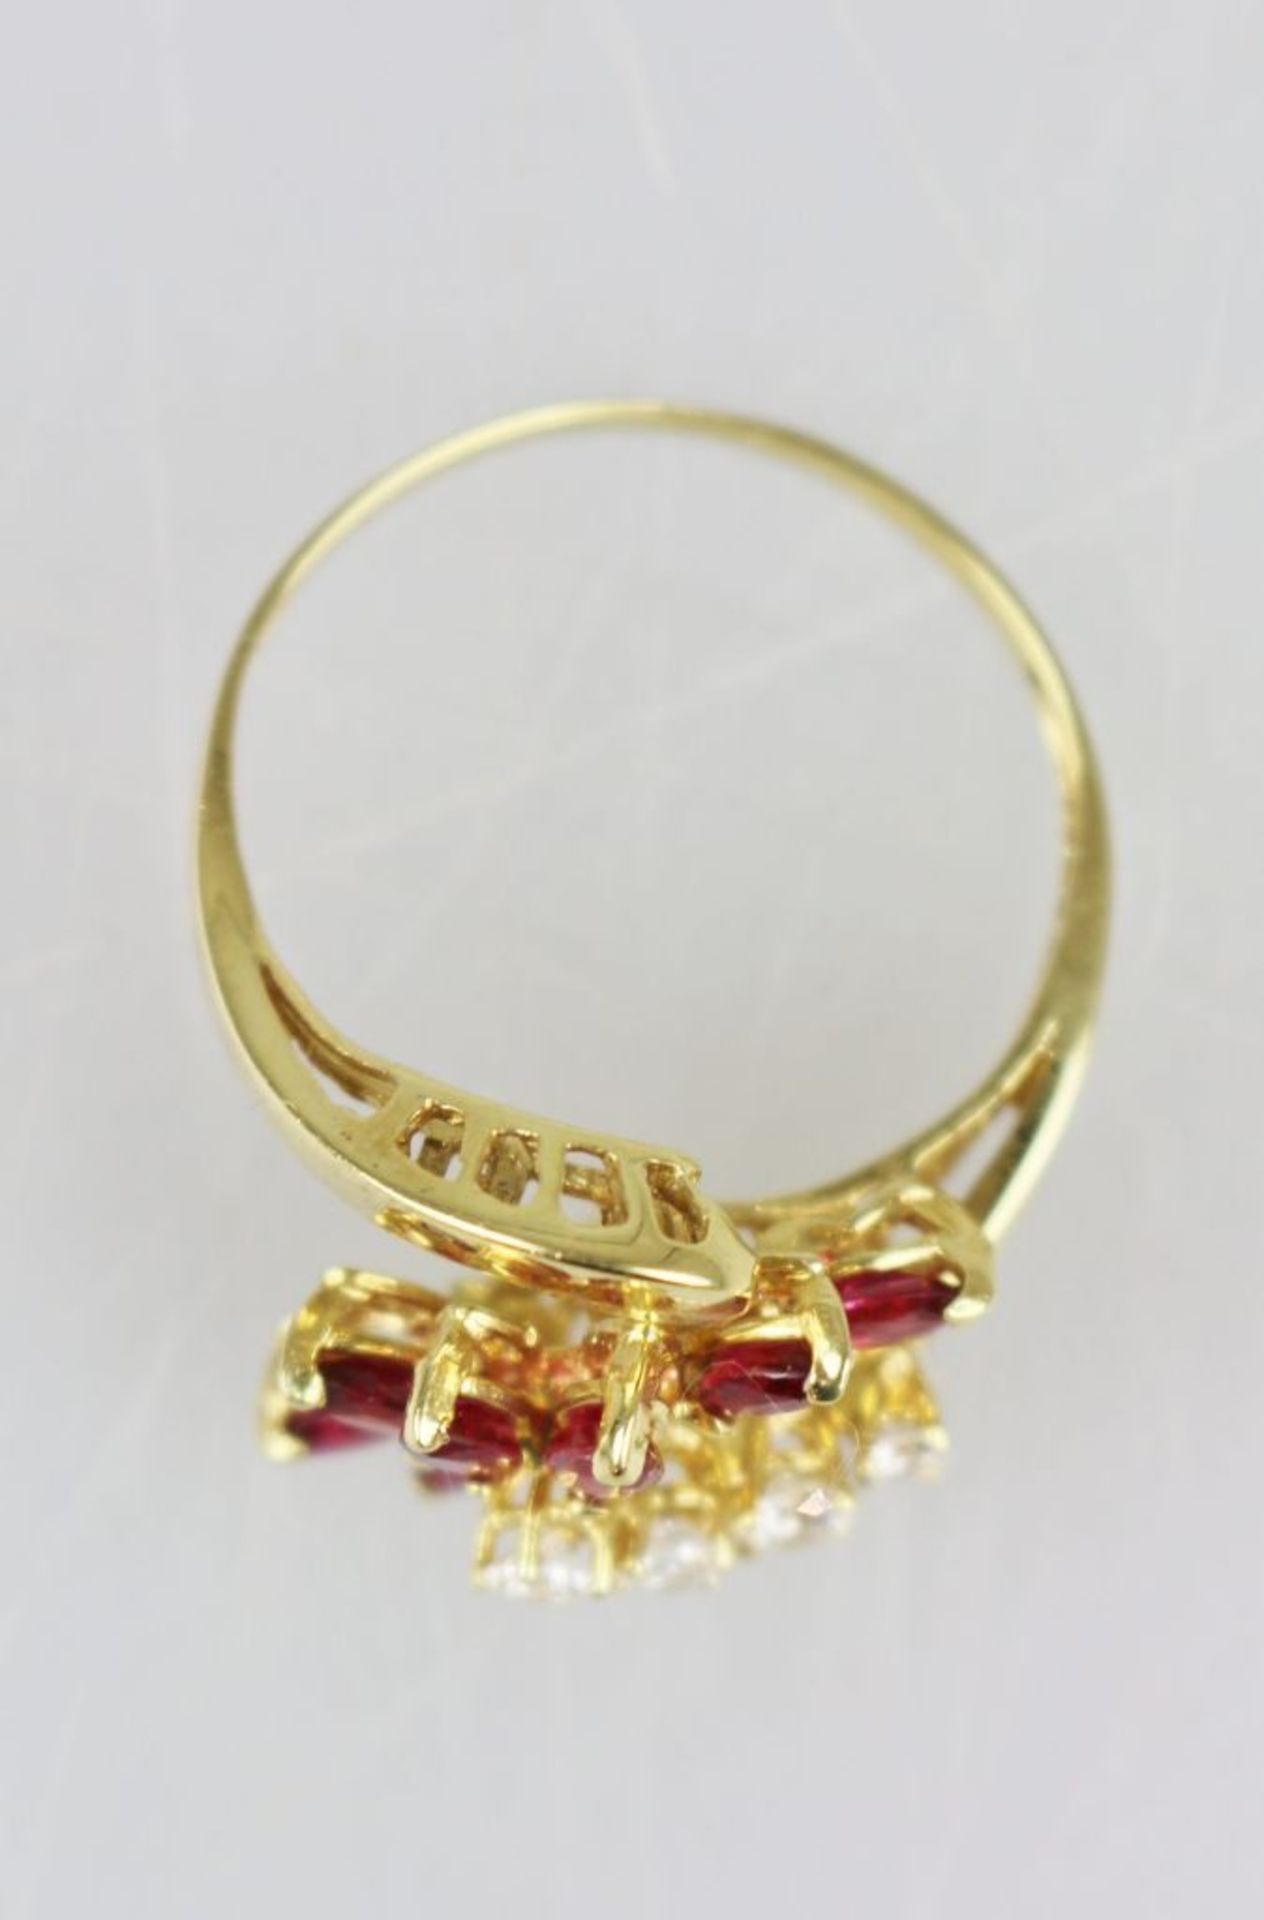 Rubin-Brillant-Ring, 750er Gelbgold, filigrane Ringschiene, diese vorne unterbrochen, an den - Image 2 of 3